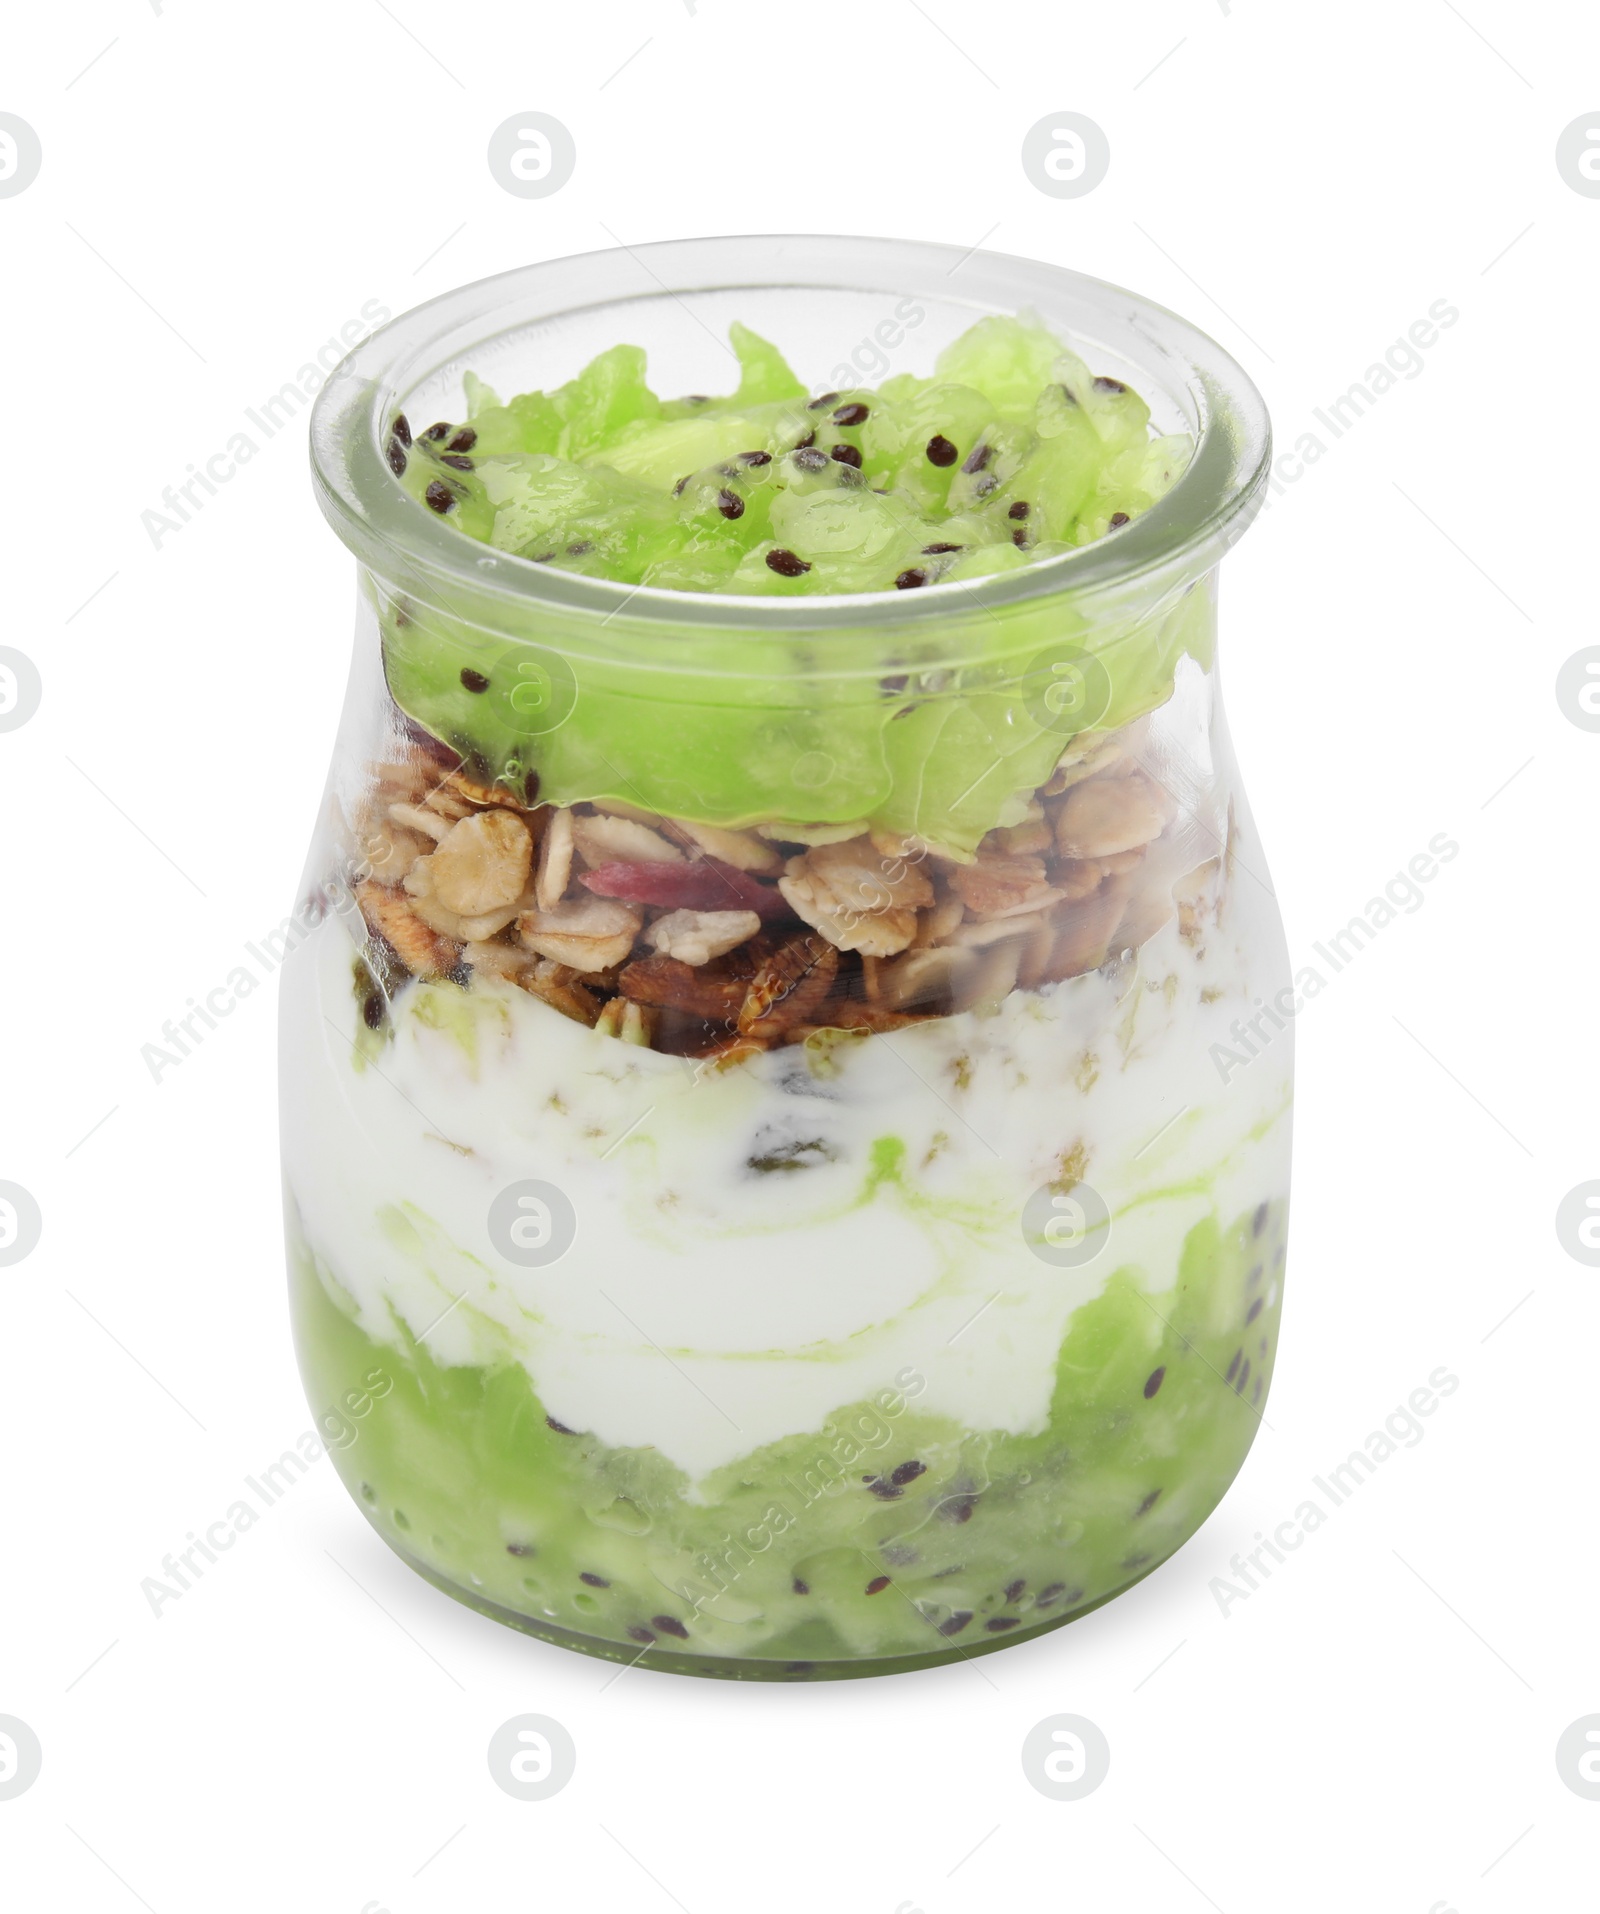 Photo of Delicious dessert with kiwi, muesli and yogurt isolated on white